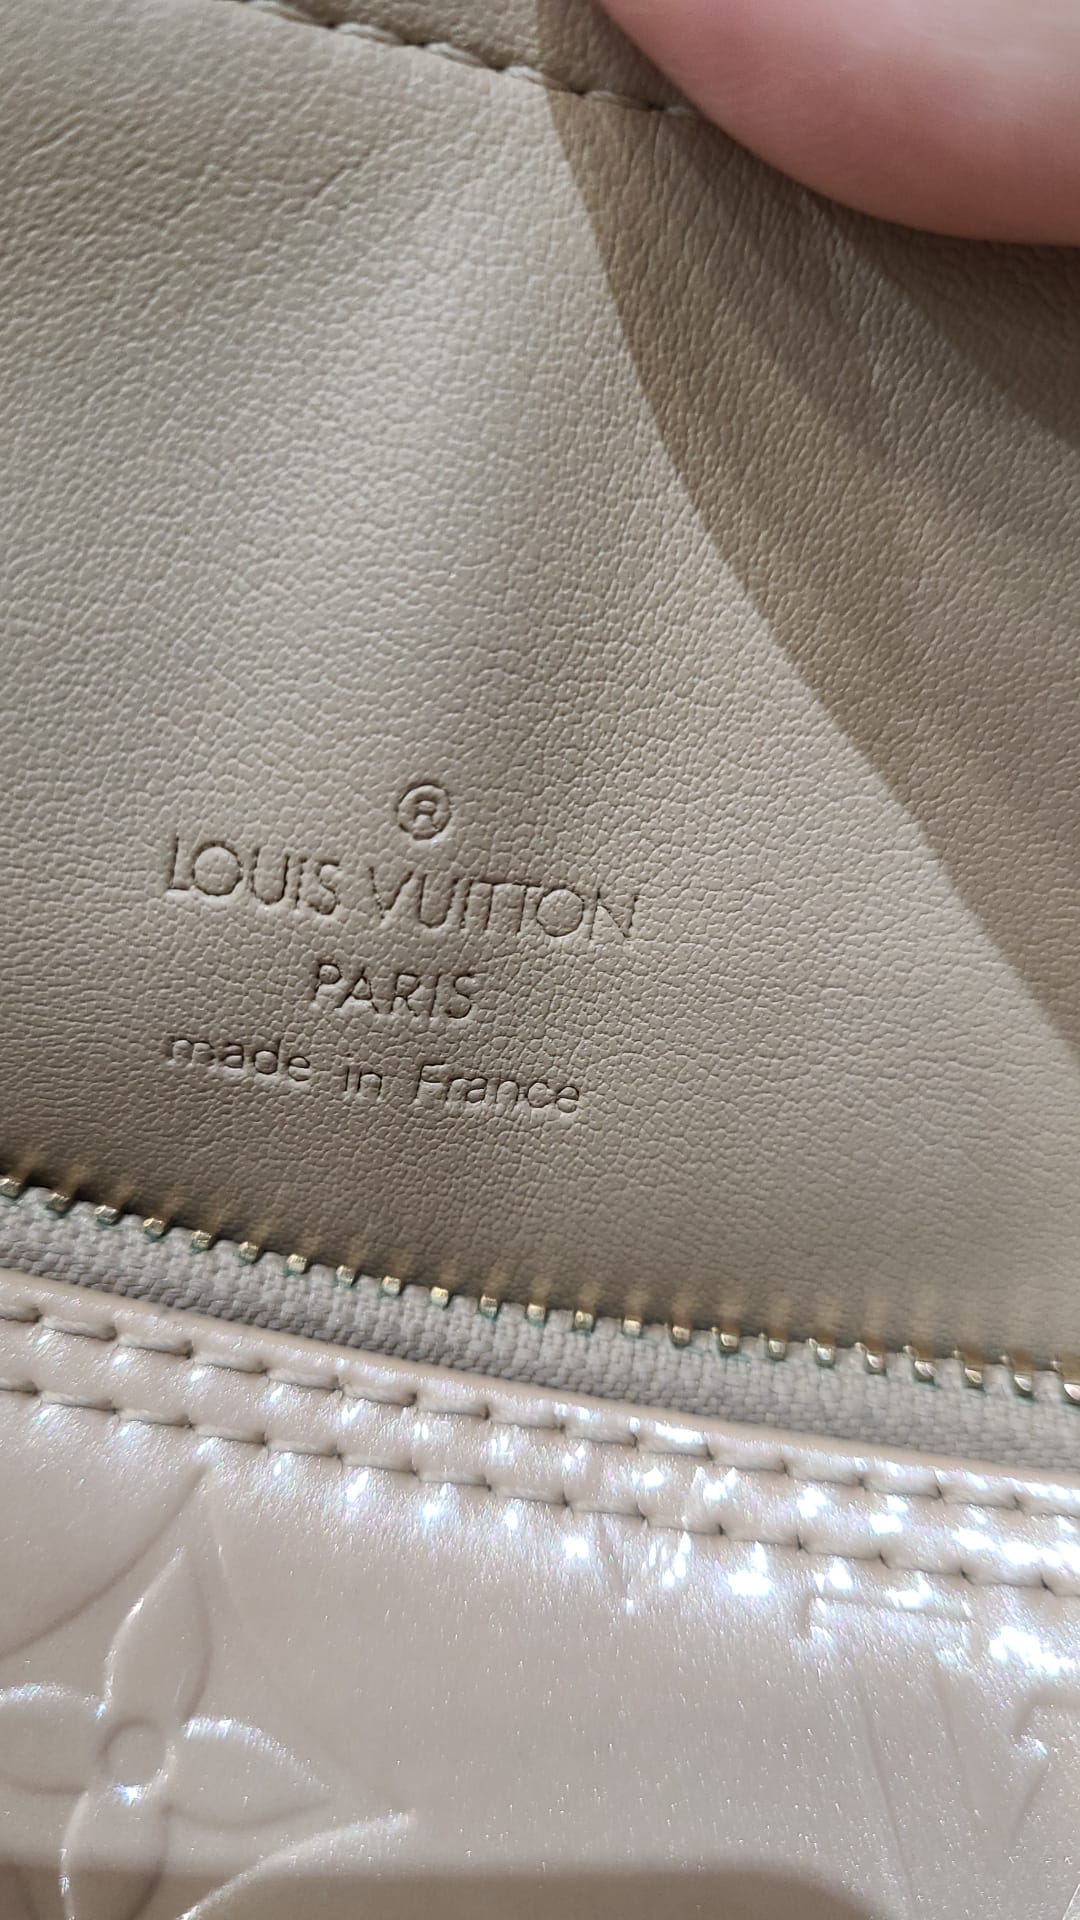 Vintage Louis Vuitton Vernis Papillon bag -purchased - Depop